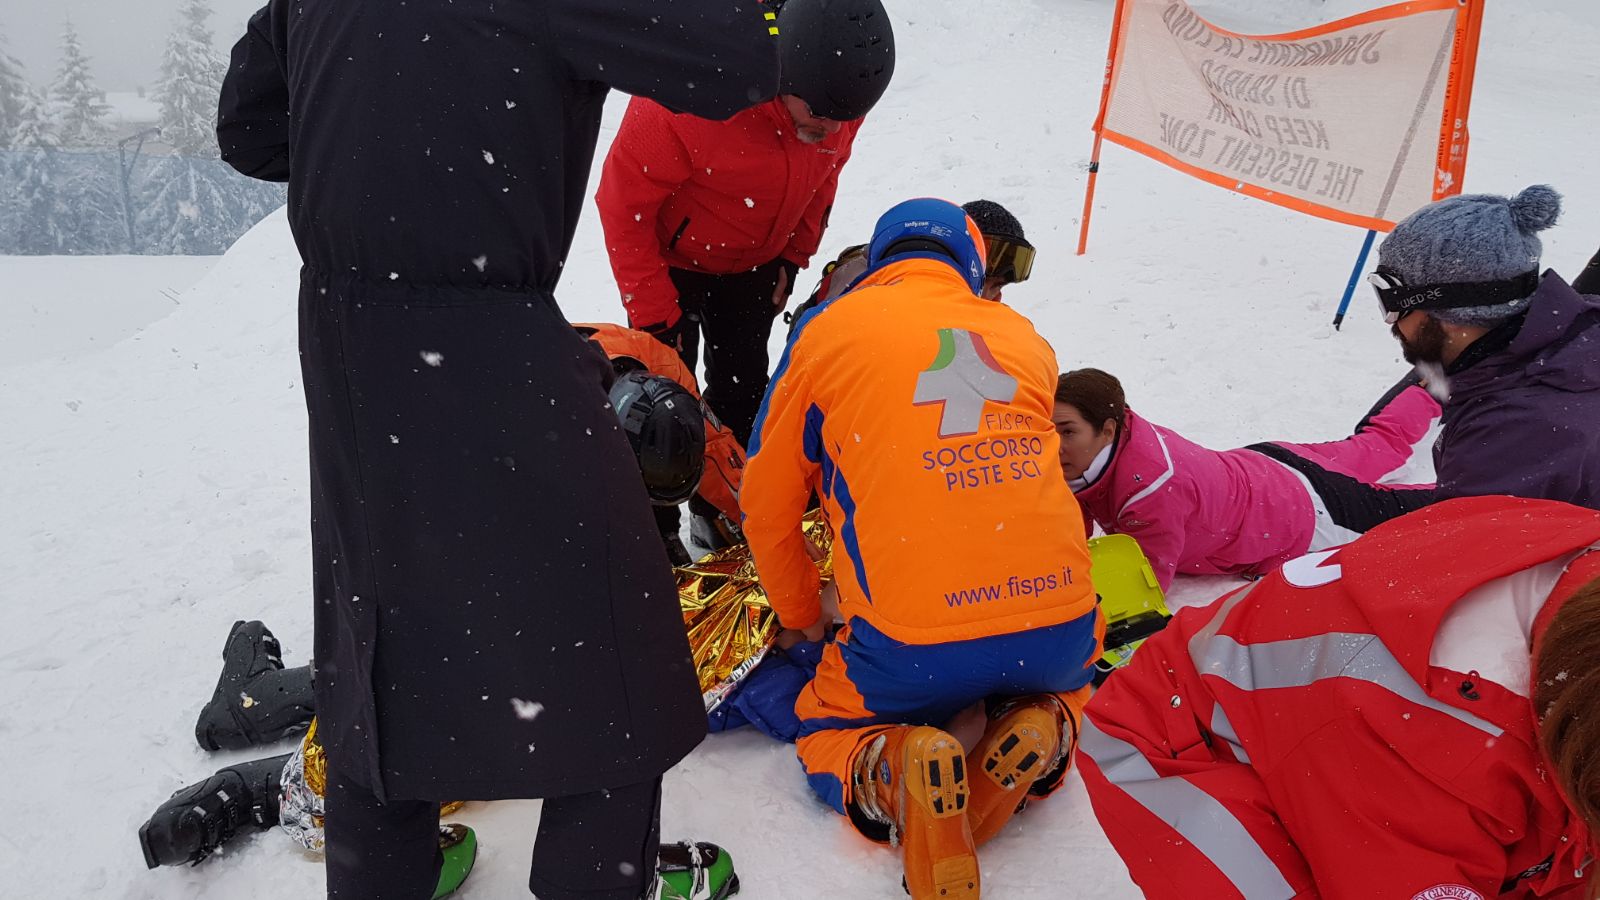 25enne salvato sulla pista da sci da DAE e lavoro di squadra | Emergency Live 3